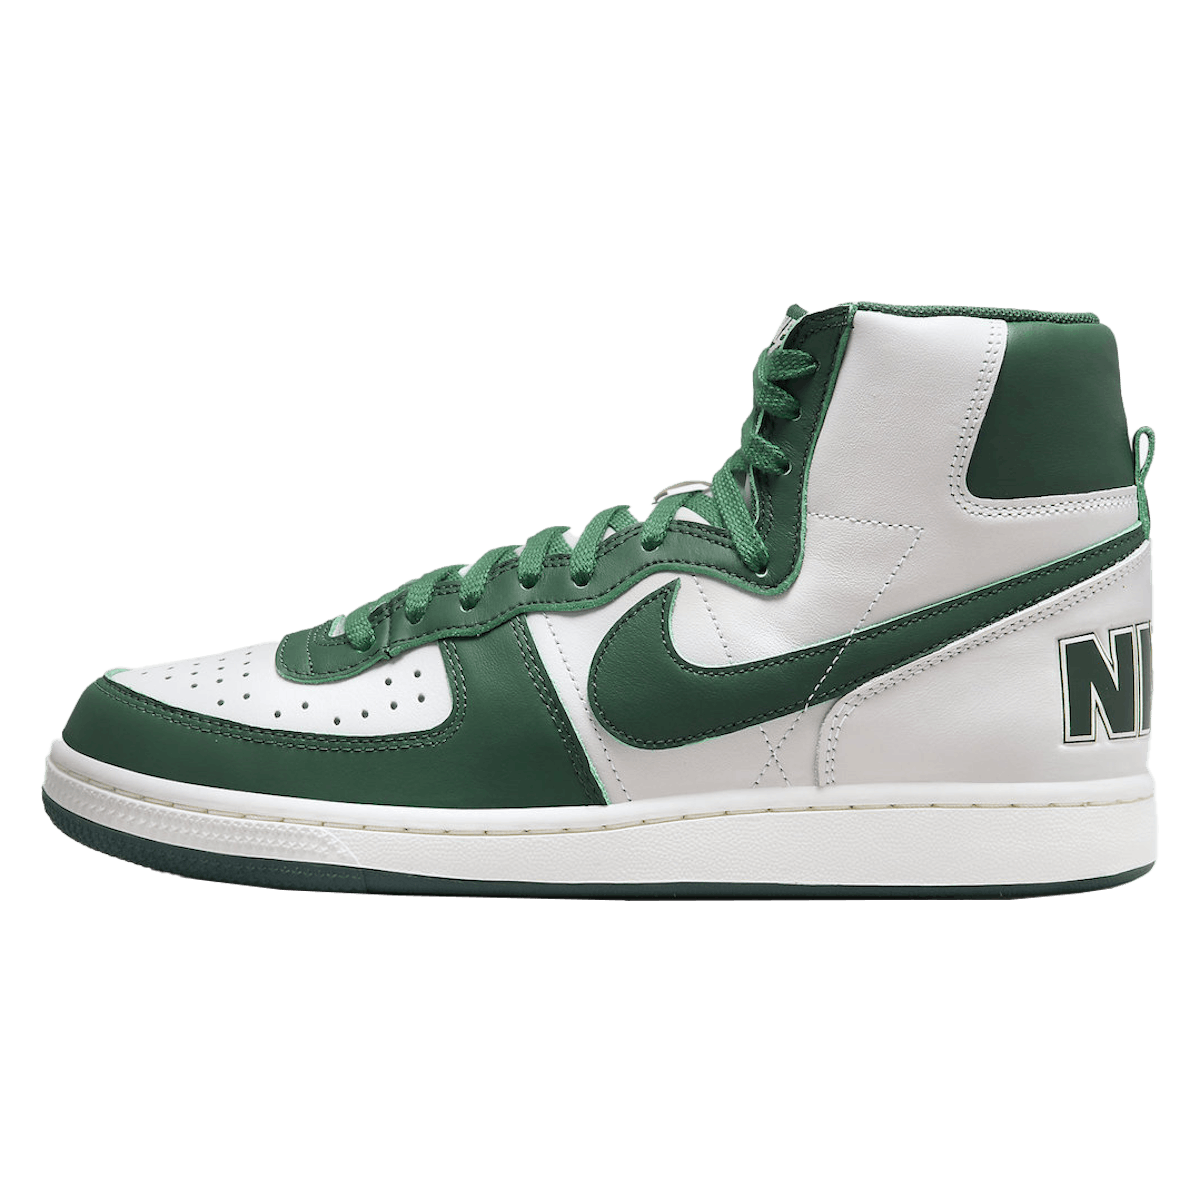 Nike Terminator High "Noble Green"